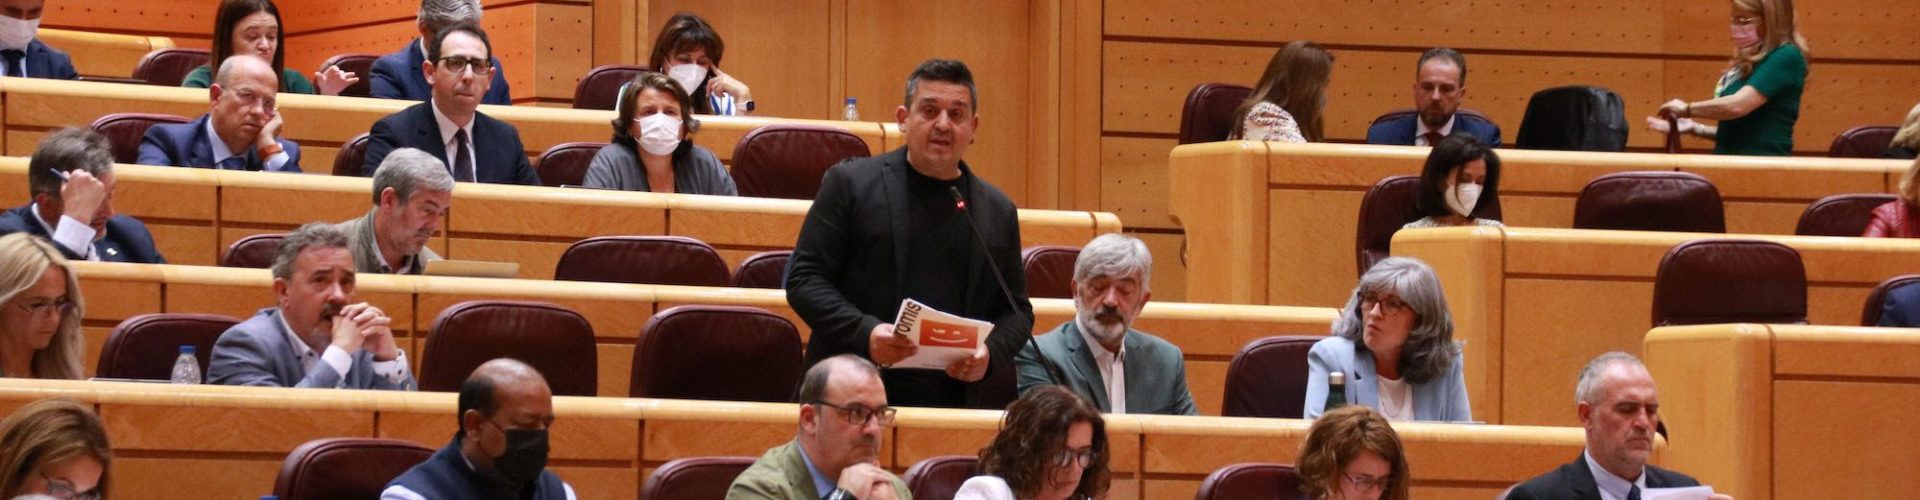 Compromís demana que el Govern reconega la responsabilitat del franquisme en els bombardejos a la població civil valenciana 